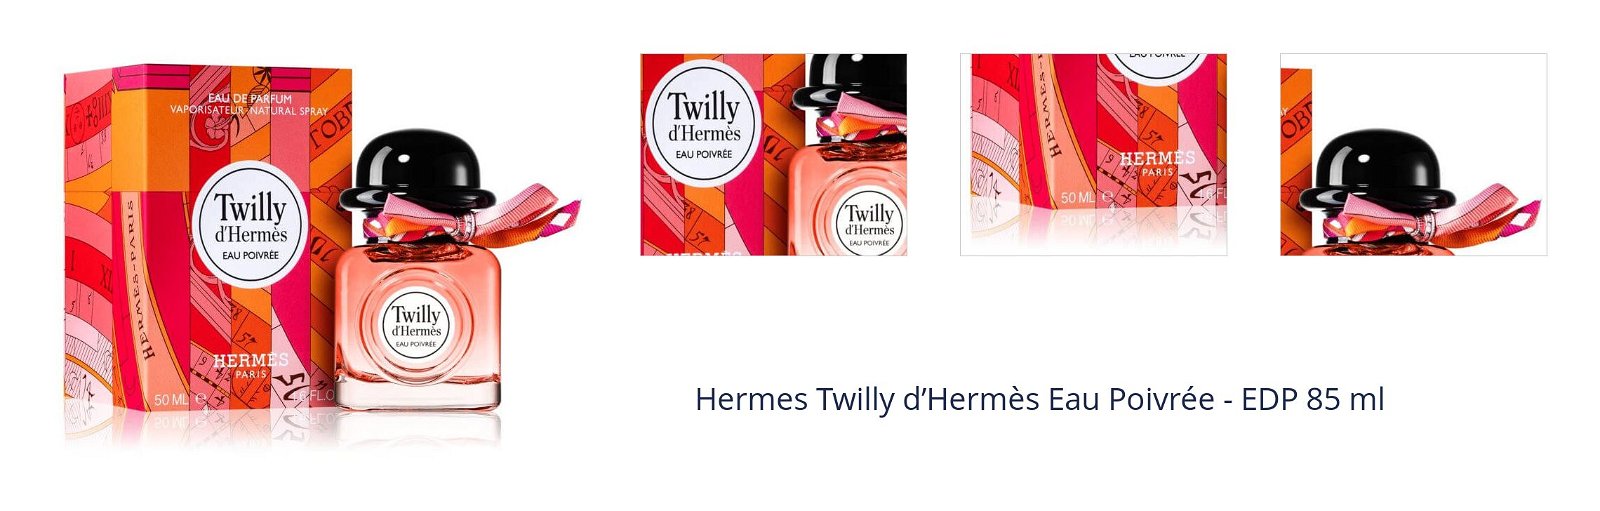 Hermes Twilly d’Hermès Eau Poivrée - EDP 85 ml 1